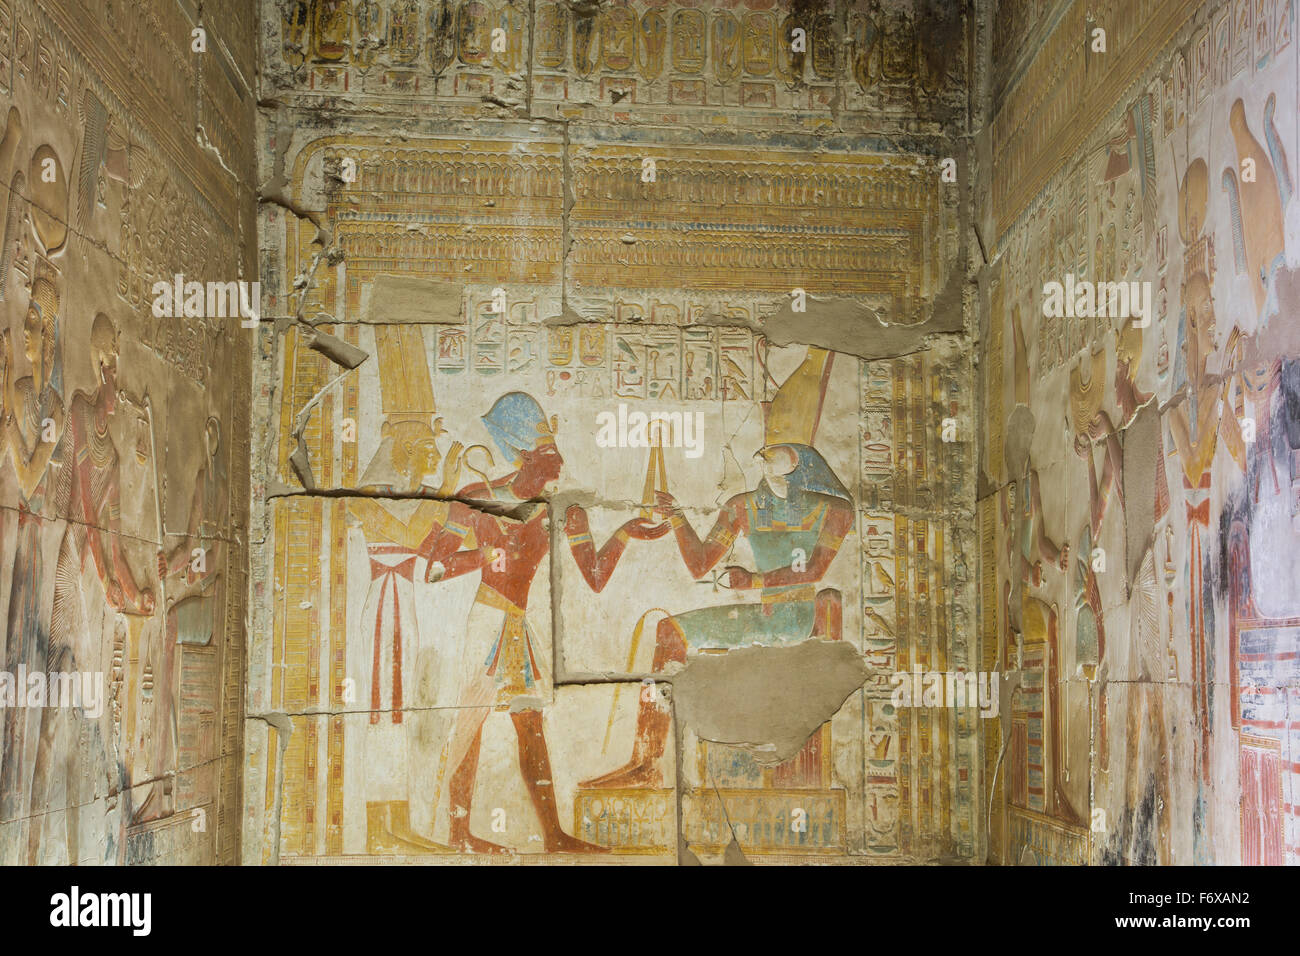 Temple de Seti I ; Abydos, Egypte Banque D'Images